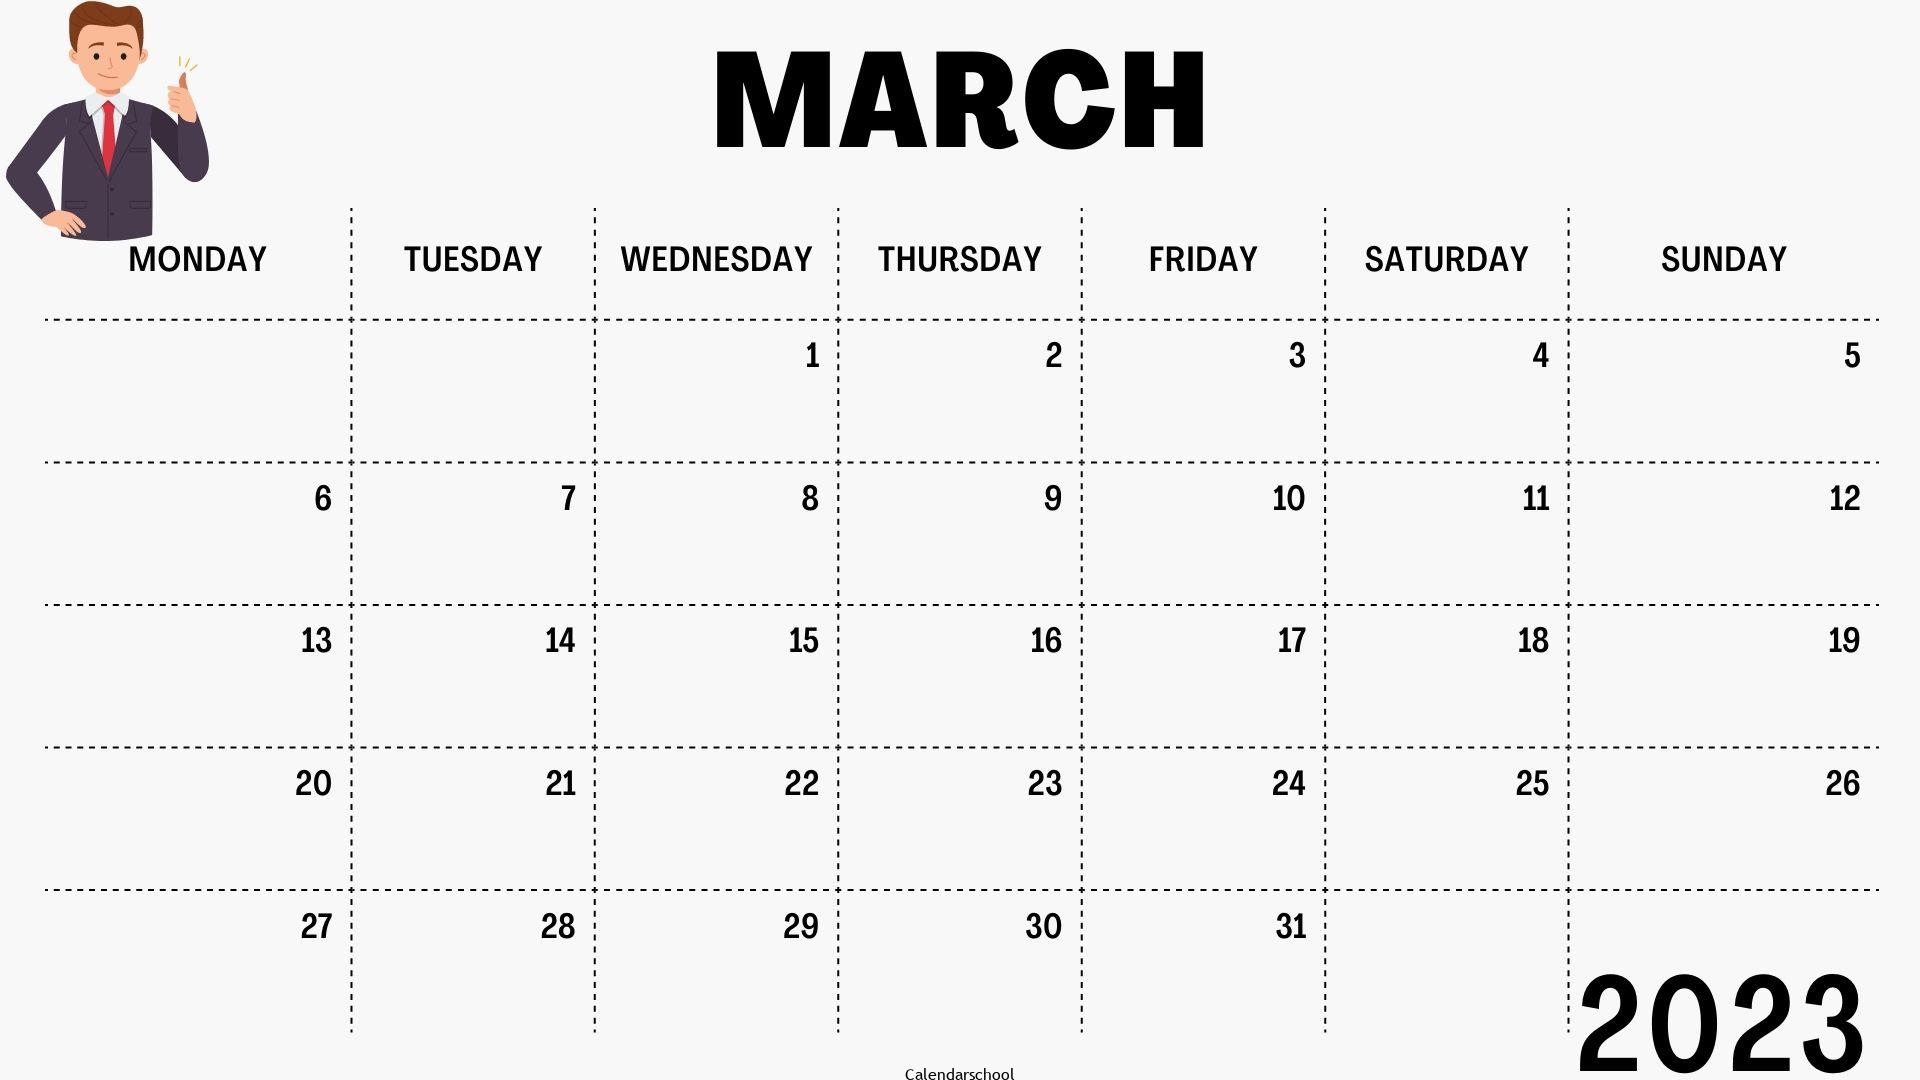 March 2023 Blank Calendar Template